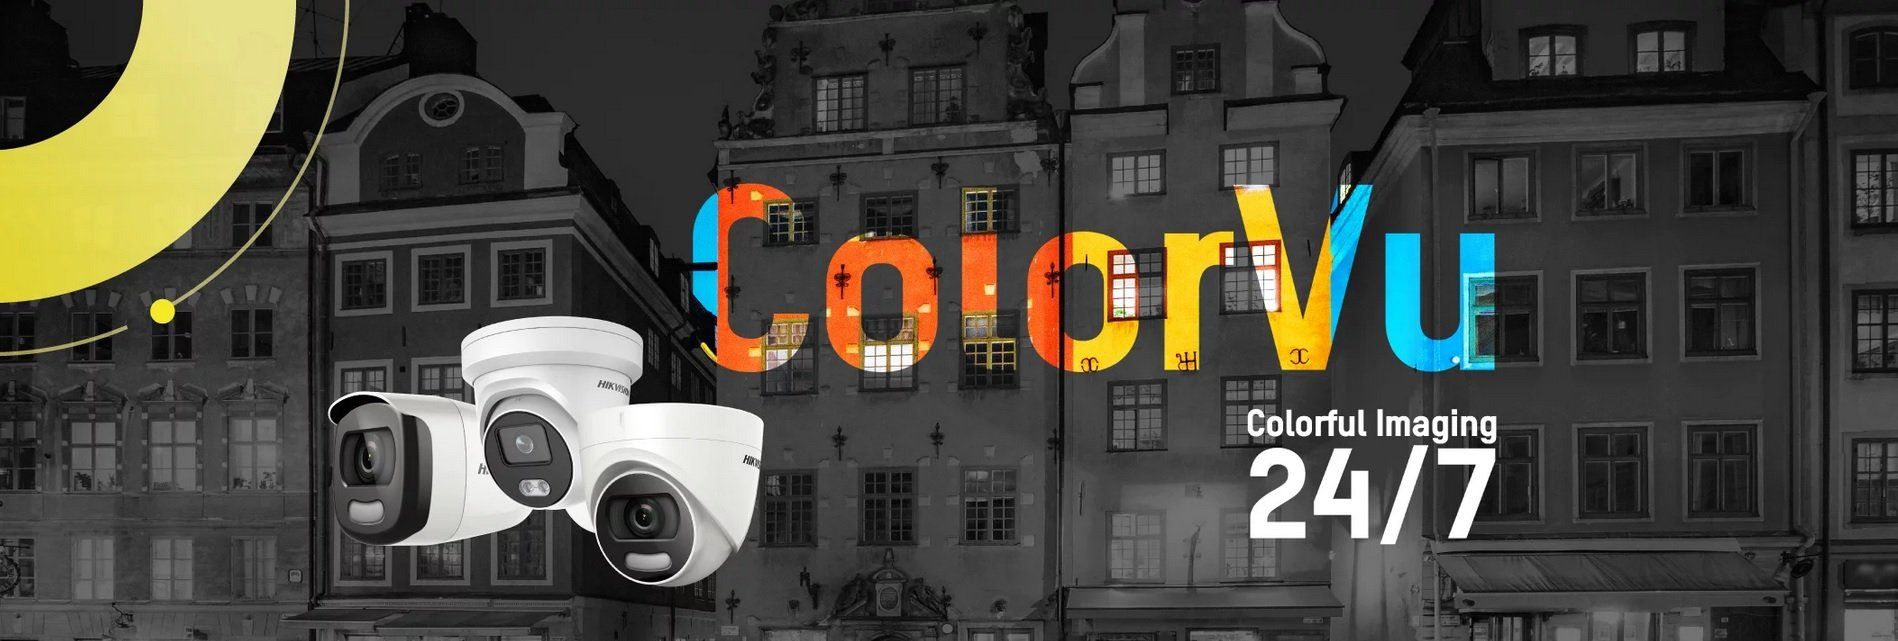 ColorVu CCTV